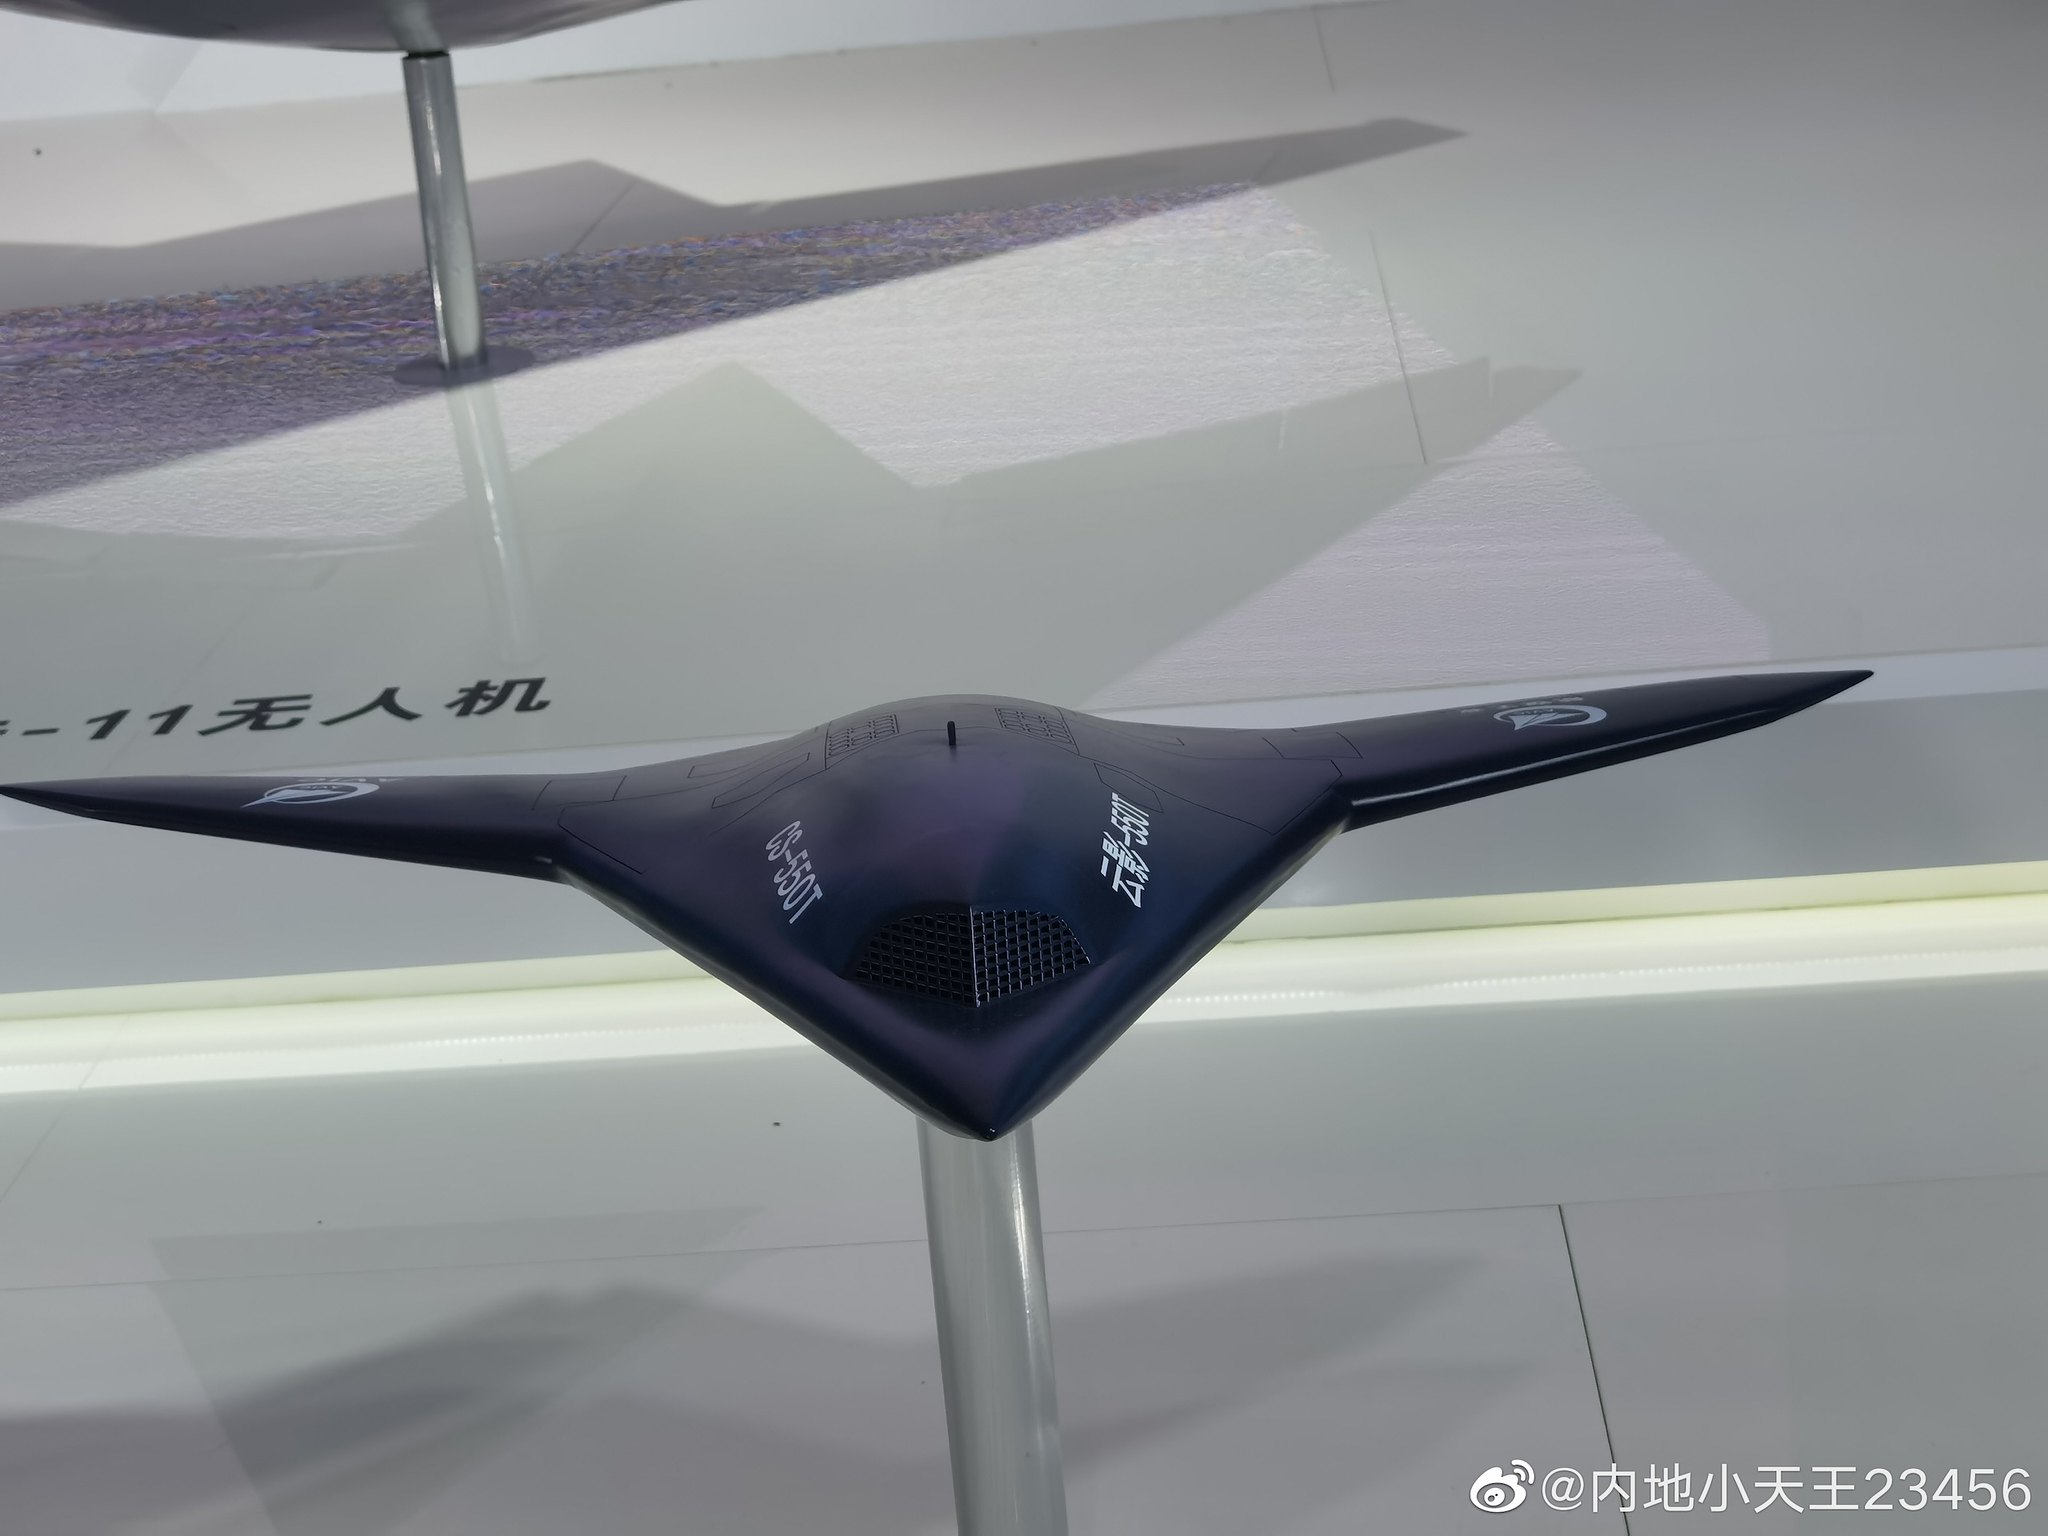 Tajemniczy dron stealth zauważony w Chinach, który wygląda jak Northrop Grumman X-47B - są trzy wersje tego, czym może być-7